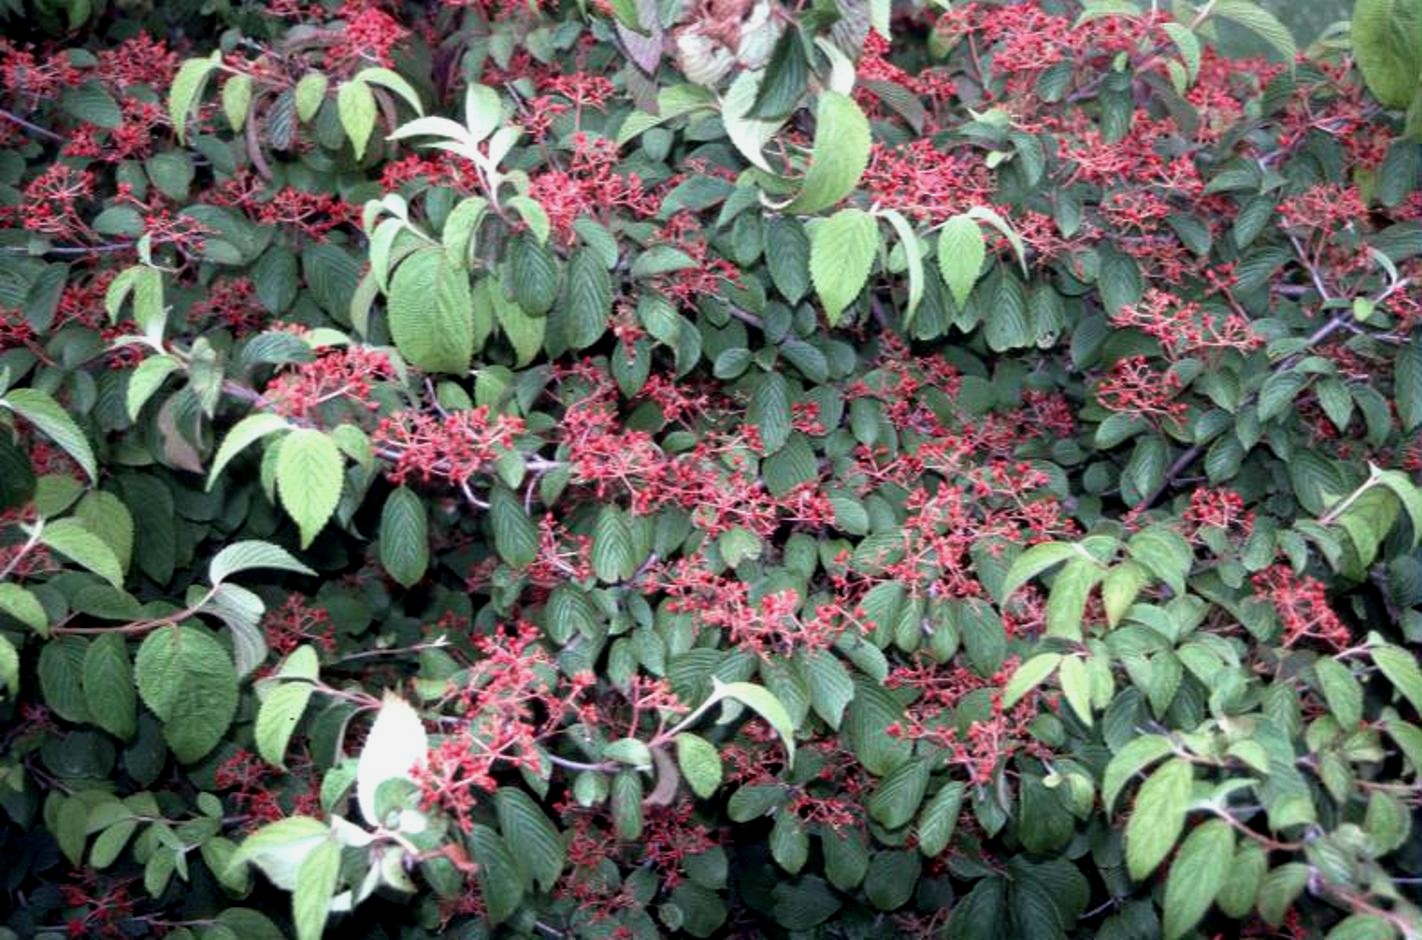 Viburnum plicatum var. tomentosum  / Viburnum plicatum var. tomentosum 